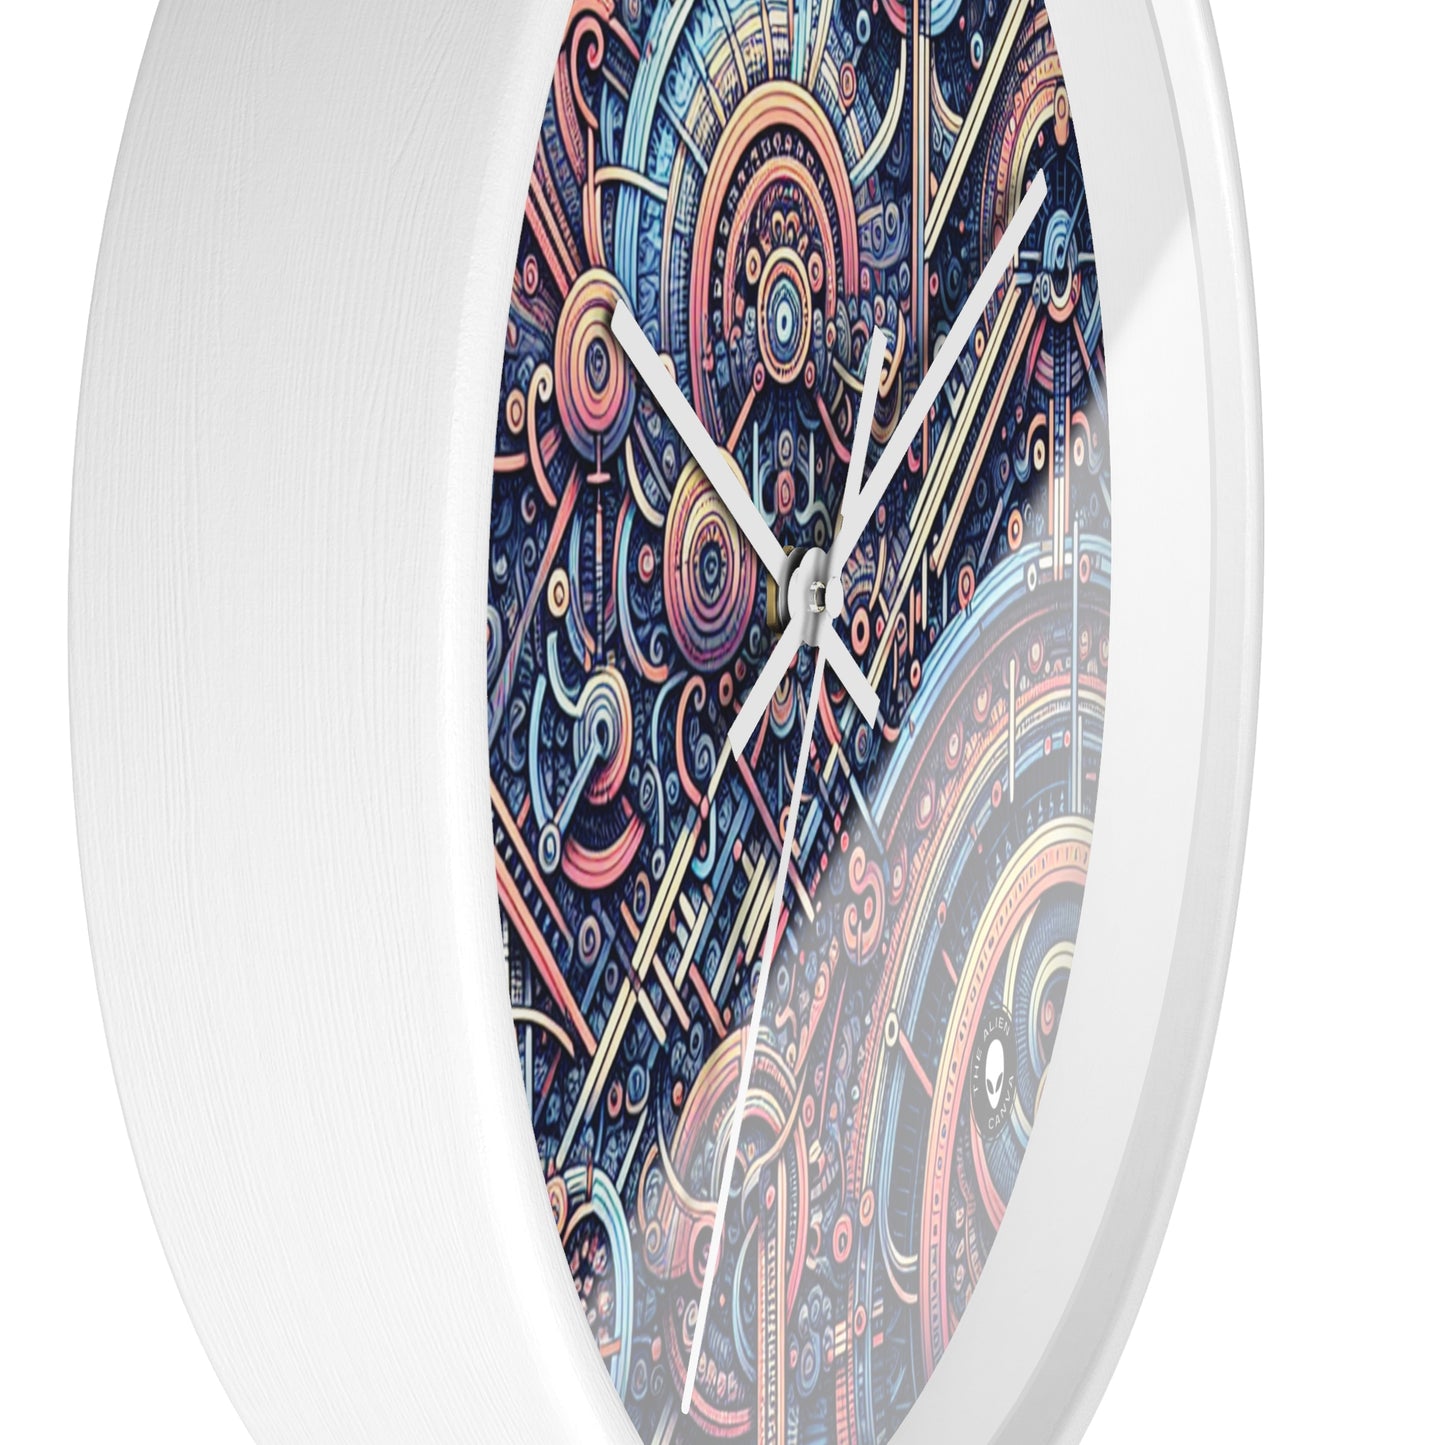 "Chaos &amp; Order: Une danse dynamique de couleurs et de motifs" - The Alien Wall Clock Algorithmic Art